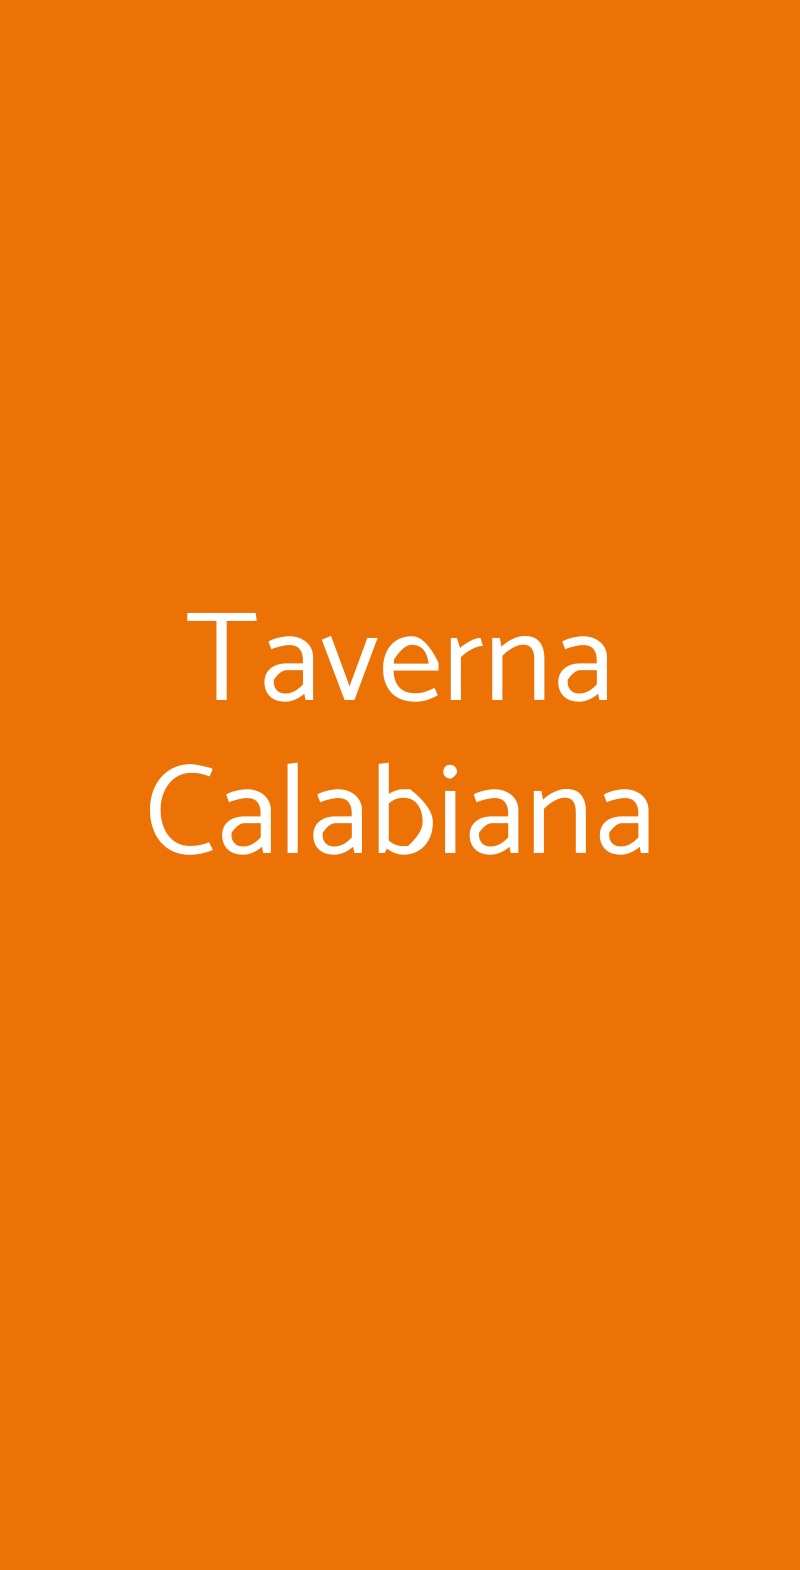 Taverna Calabiana Milano menù 1 pagina